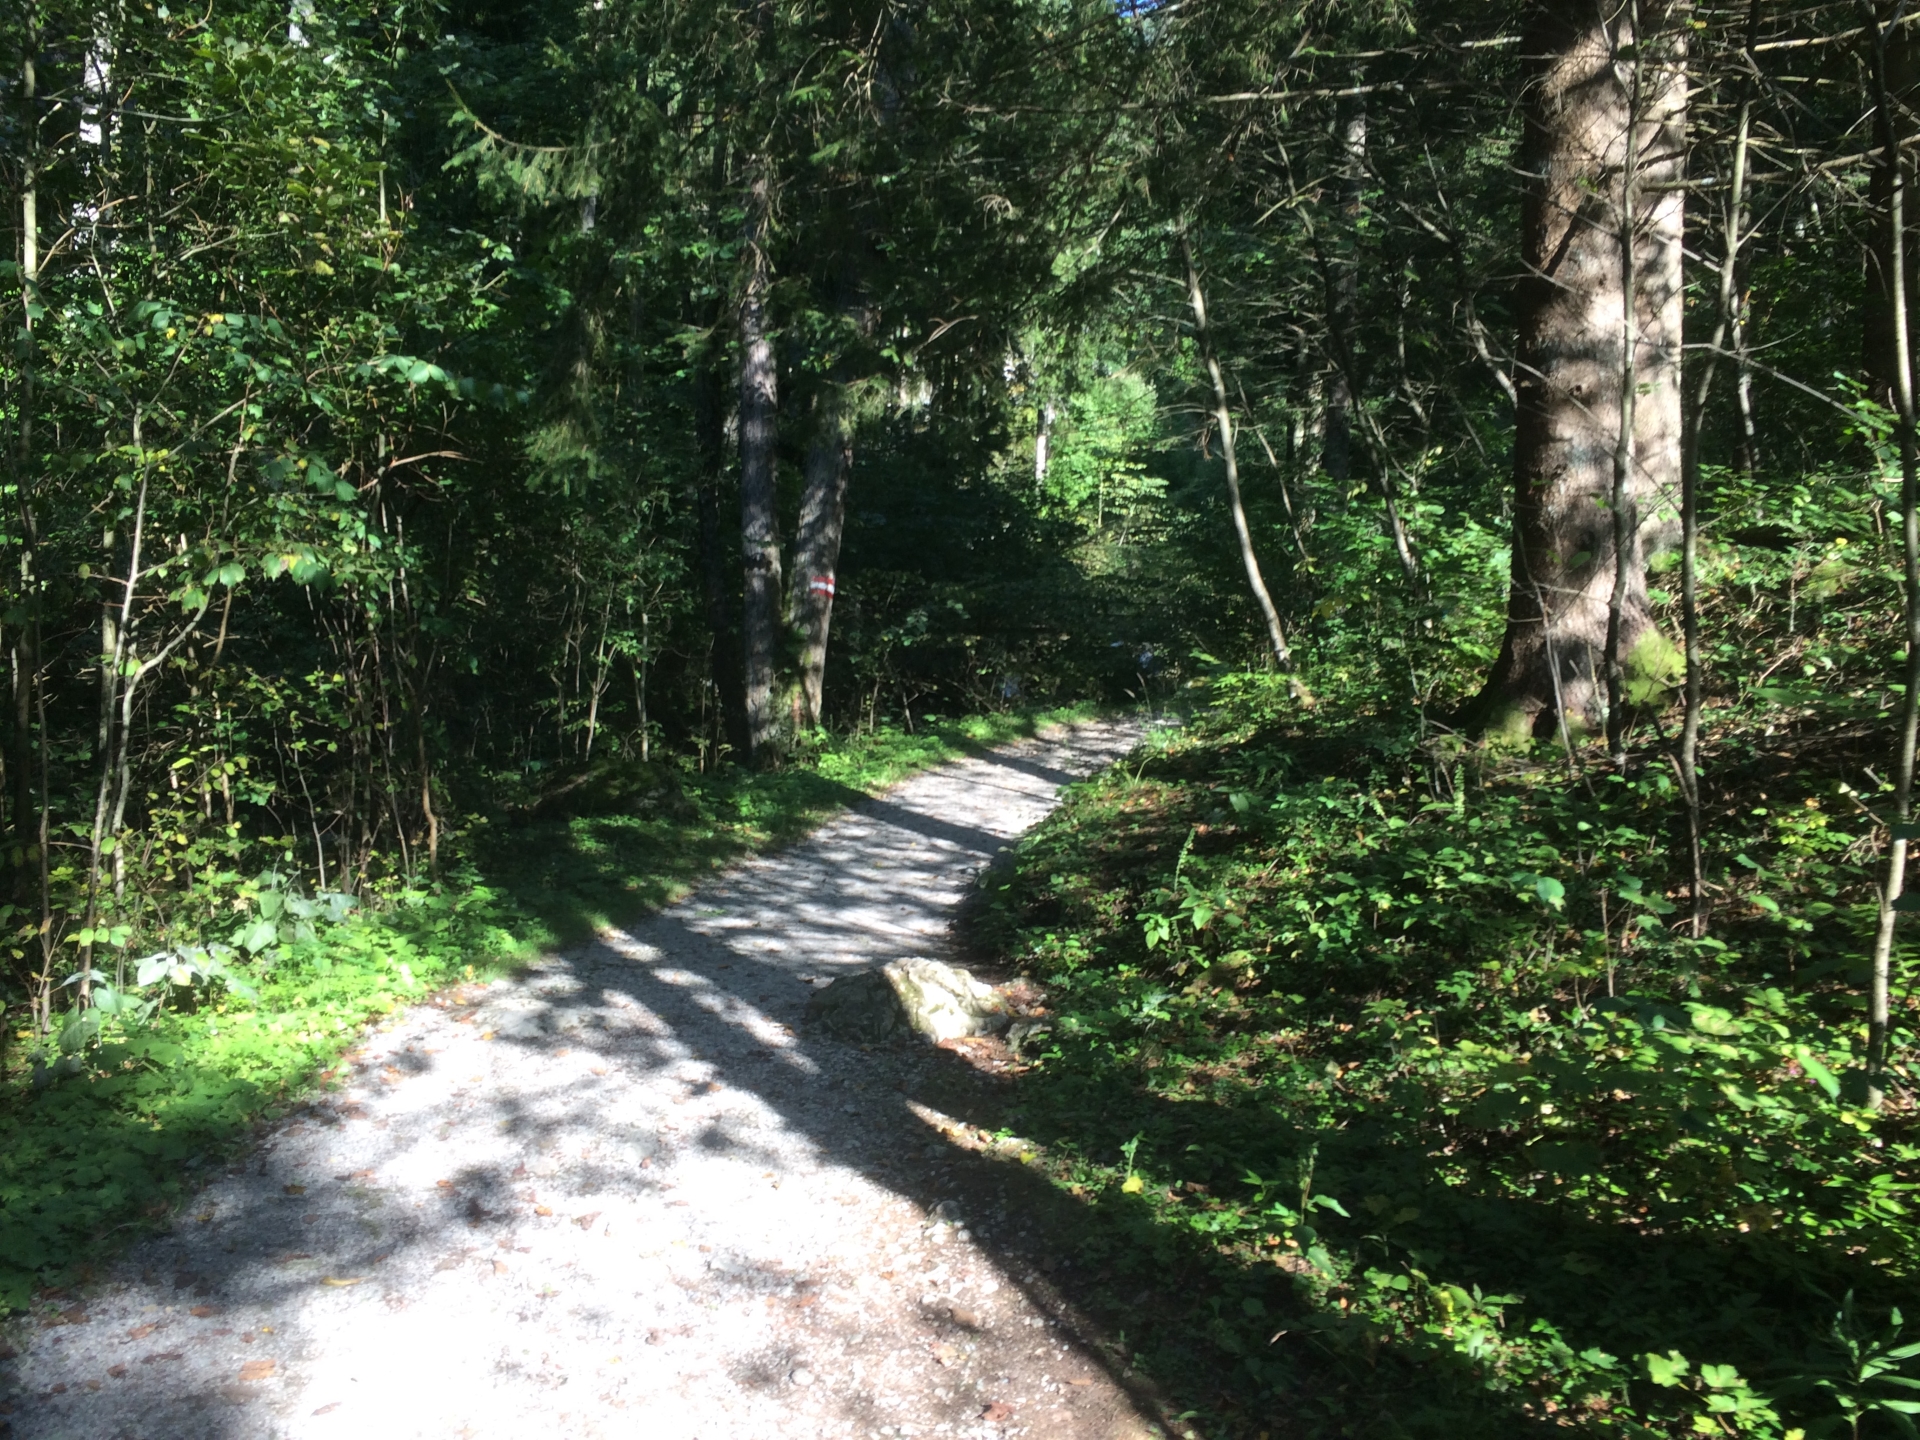 The Bärenschützklamm trail